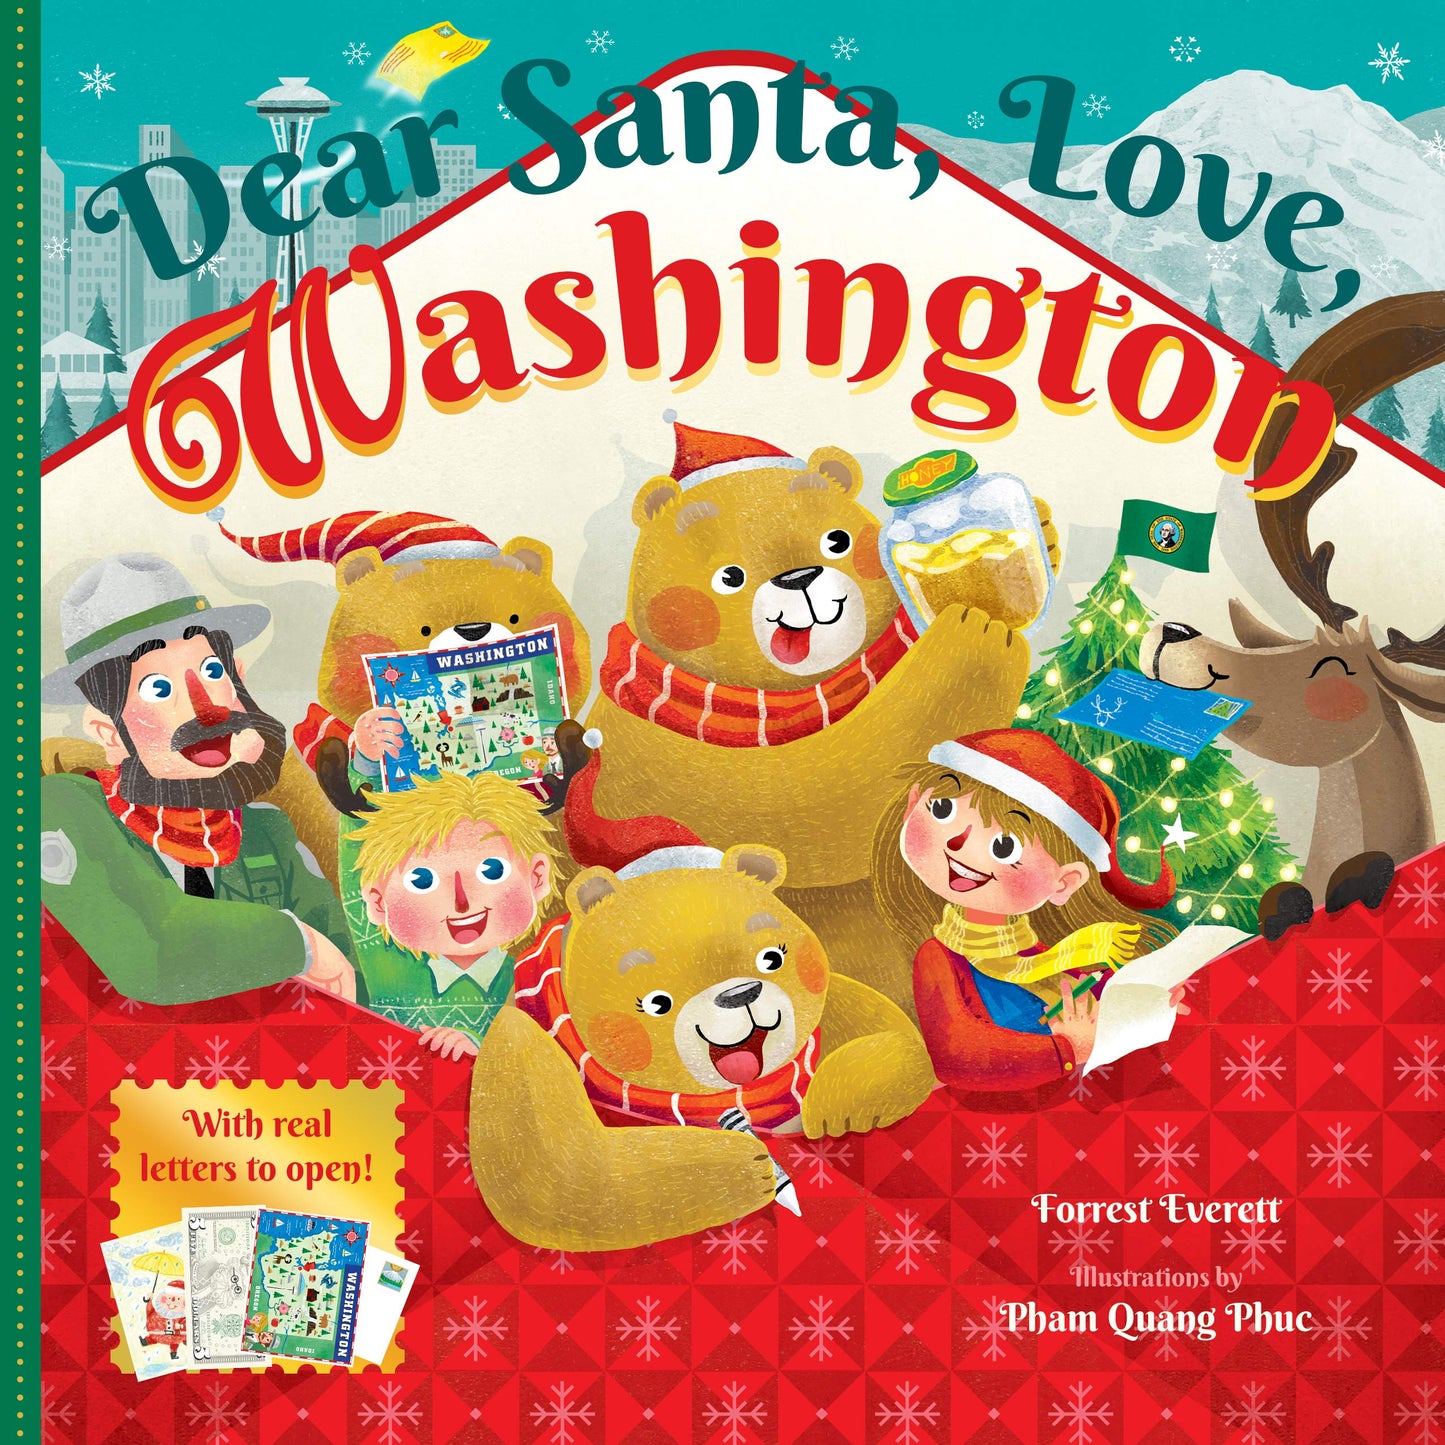 Dear Santa love Washington book